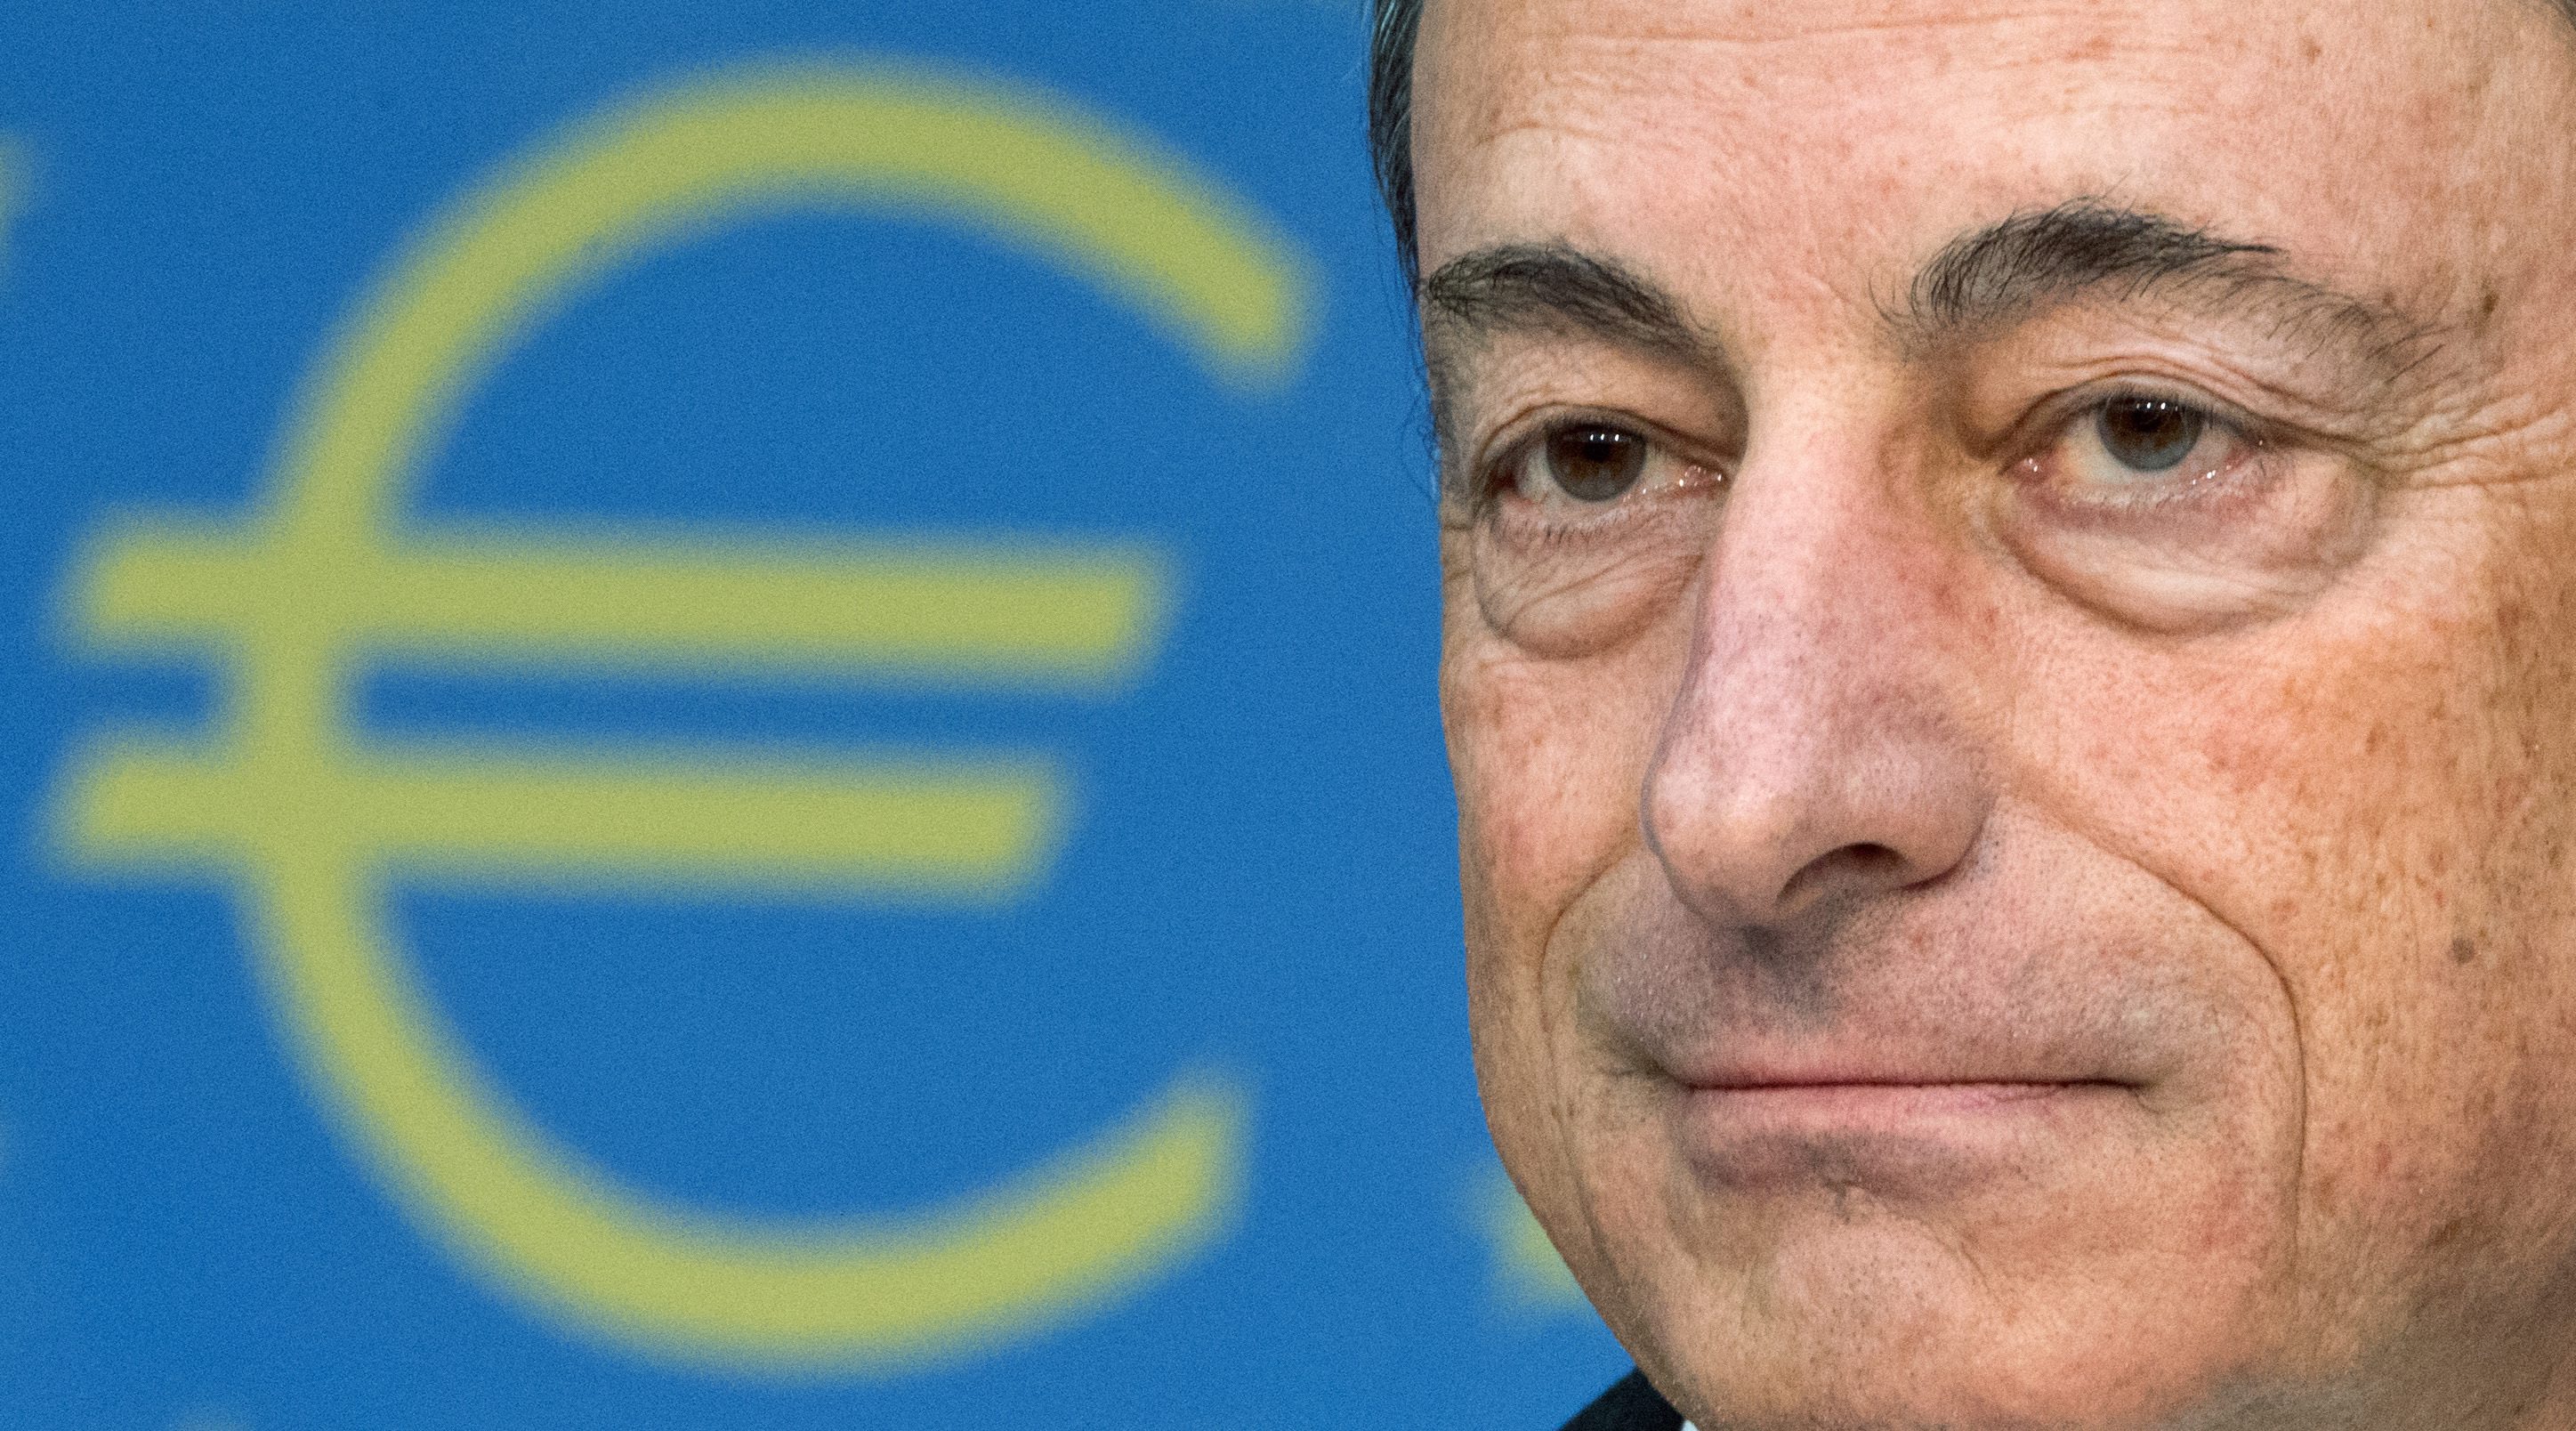 De voorbereidingen voor het optuigen van een nieuwe ronde stresstesten van de grootste Europese banken zijn in volle gang. Omdat de Europese Centrale Bank (ECB) straks ook het toezicht op de Europese banken voor zijn rekening moet nemen, is president Mario Draghi vast begonnen met het optuigen van strengere testen voor de banken die hij straks in de gaten moet houden. De ECB heeft om te beginnen banken geselecteerd met een balanstotaal van minstens 30 miljard euro. In totaal betekent dit dat de centrale bank zo’n 130 banken onder de loep zal nemen en 85 procent van het Europese bankenstelsel dekt. De Nederlandse banken ABN Amro, ING, Rabobank en SNS alsook de Bank Nederlandse Gemeenten en de Nederlandse Waterschapsbank prijken op het lijstje van banken die aan de test onderworpen zullen worden. De test zal in november starten en een jaar duren. Streng genoeg? De eerdere Europese stresstesten zijn vaak bekritiseerd, omdat ze niet streng genoeg zouden zijn. Zo kwam de Belgische bank Dexia eerder als één van de sterkste banken uit de test om vervolgens aan de afgrond te belanden. Hierom wordt er nu extra kritisch gekeken naar de testen die de ECB als aanstaand toezichthouder op de Europese banken gaat uitvoeren. Het onderzoek bestaat uit drie delen. In de eerste plaats zal de ECB de kwaliteit van de bezittingen van de banken onder de loep nemen. Een belangrijk onderdeel hierin is het kijken of de onderpanden van leningen die op de balansen staan juist gewaardeerd zijn. De test zal worden uitgevoerd op de balansen van de deelnemende banken op 31 december van dit jaar. Ook staatsobligaties onder de loep Bovendien zal er gekeken worden naar de "schokbestendigheid" van de activa op de balansen. In een toelichting benadrukte ECB president Draghi dat alle typen activa op de balansen onder de loep zullen worden genomen waaronder dus ook staatsobligaties. In eerdere testen zou er onvoldoende rekening gehouden worden met sterke waardeverminderingen van staatsobligaties van zwakke eurolanden. Juist de banken in die landen hebben veel staatspapier van de eigen overheid op de balans staan. Vervolgens worden dergelijke obligaties vaak weer als onderpand gebruikt voor andere leningen. Voldoende vet op de botten De ECB hanteert in eerste instantie een minimale kapitaaleis van 8 procent. Dat betekent dat banken een buffer moeten aanhouden die overeenkomt met minstens 8 procent van hun naar risico gewogen bezittingen. Die buffer kan weer worden onderverdeeld in een zogenoemd tier 1-ratio van minstens 4,5 procent. Deze kernbuffer bestaat voornamelijk uit het gewone aandelenkapitaal en andere reserves die onder het eigen vermogen vallen. De tweede grote component van de eis is een zogenoemde kapitaalconserveringsbuffer (beter bekend als capital conservation buffer) van 2,5 procent. Omdat het hier om allemaal systeemrelevante banken gaat, heeft de ECB er nog een procent extra bovenop gedaan. Verdere details over de stresstesten zal de ECB later nog bekendmaken, schrijft de instelling. Met name de scenario’s die de ECB zal gebruiken om de schokbestendigheid van de banken te testen zal interessant worden. Voorbereidingen kunnen beginnen Uiteraard wil de ECB graag een strenge test uitvoeren zodat het wanneer het straks toezicht moet houden op de Europese banken niet geconfronteerd wordt met plotselinge problemen. Waar nodig worden banken opgeroepen om ervoor te zorgen dat ze voldoende vet op de botten hebben om zonder kleerscheuren door de testen te komen. Een onderzoek van de Amerikaanse zakenbank Morgan Stanley onder beleggers eerder deze maand, wees volgens persbureau Reuters uit dat men verwacht dat onder de huidige omstandigheden tussen de 5 en de 10 banken niet voor de test zullen slagen. Die banken zouden in totaal zo’n 50 miljard euro aan extra kapitaal moeten ophalen om solide genoeg te worden. In opmars naar de strenge testen van Draghi zullen banken die nu al onraad ruiken dus voor het einde van het jaar op zoek moeten naar extra (risicodragend) vermogen om hun balans mee te versterken. De komende tijd zegt de ECB snel in Frankfurt met de deelnemende banken om de tafel te gaan zitten ter voorbereiding van de testen.